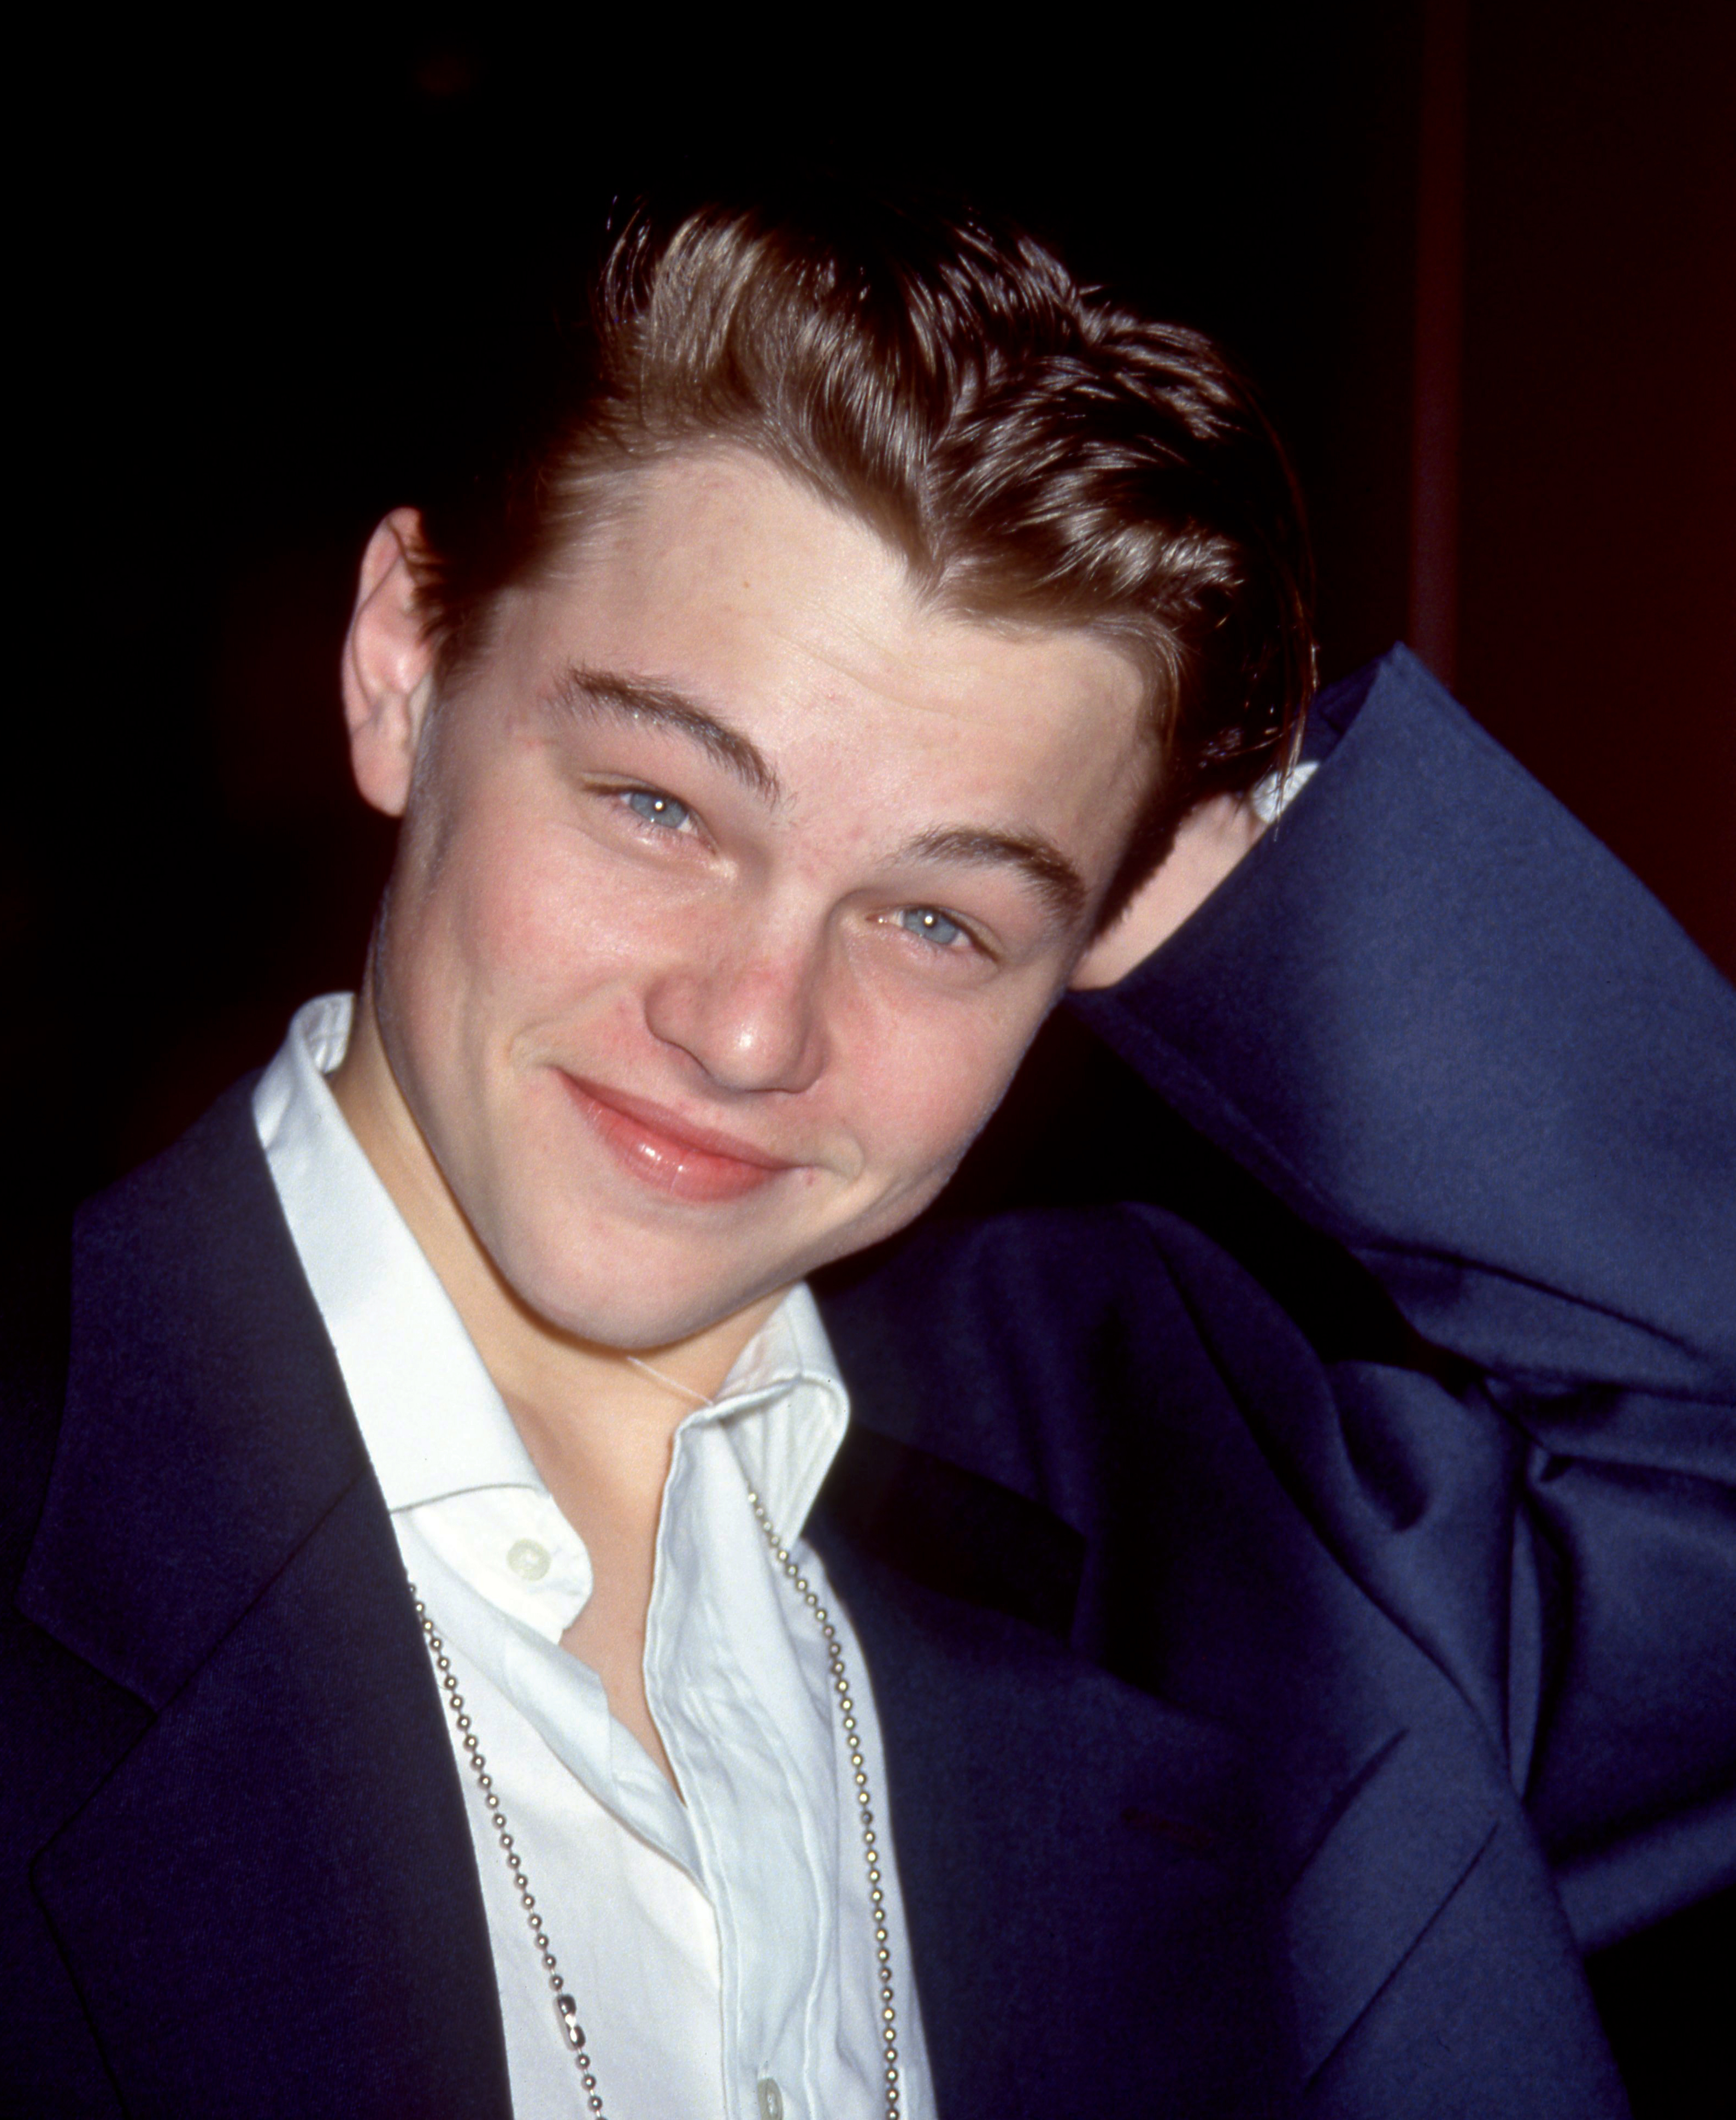 Leonardo DiCaprio bei der Premiere von "This Boy's Life" in Los Angeles, 1993 | Quelle: Getty Images